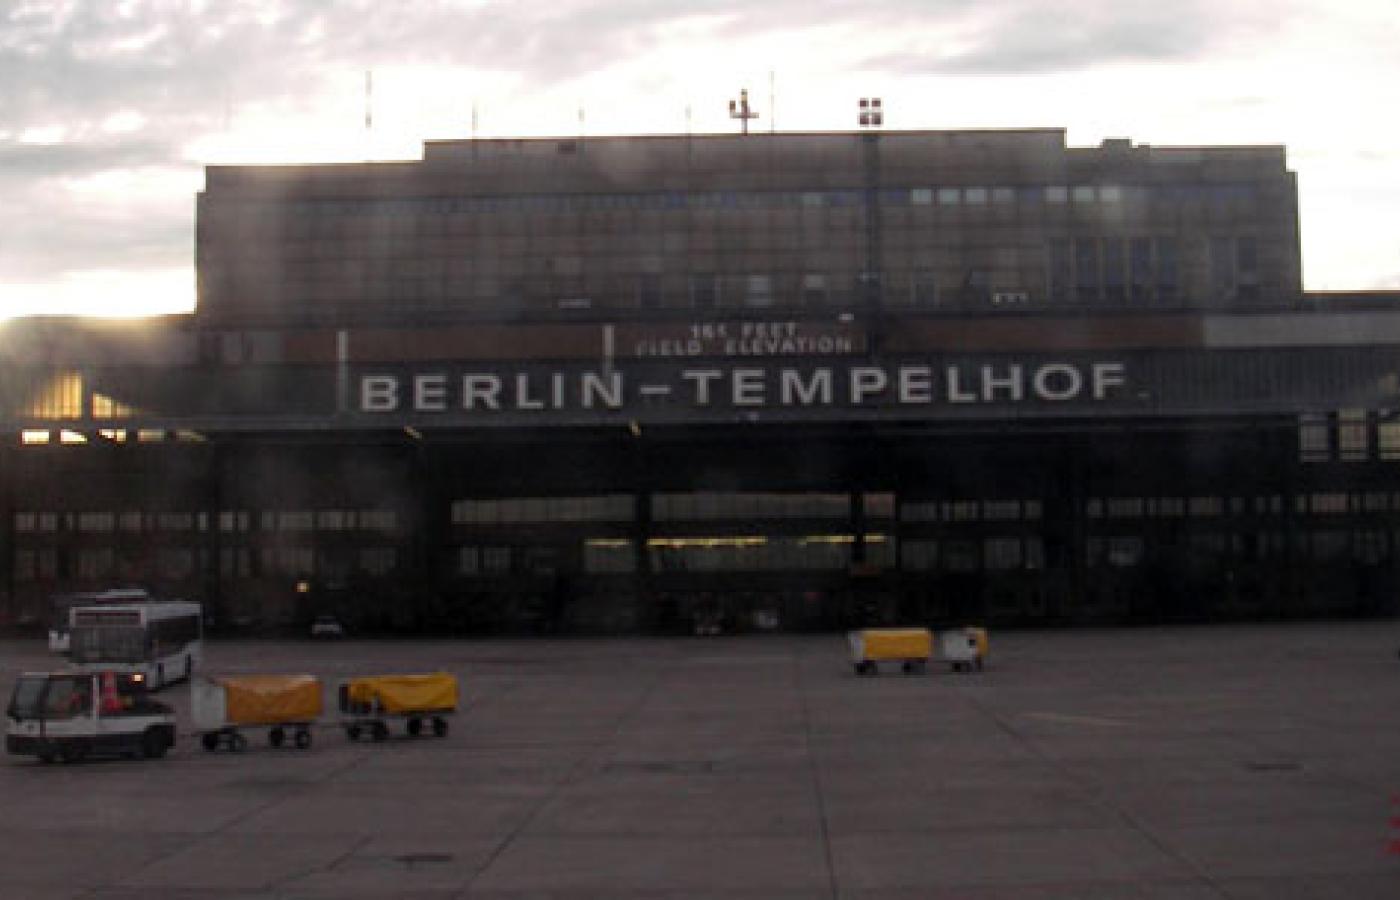 Monumentalny terminal Tempelhof, jeden z największych na świecie, znajduje się w odległości zaledwie 20 minut spacerem od Bramy Brandenburskiej i Reichstagu. Fot. martinroell, Flickr, CC by SA